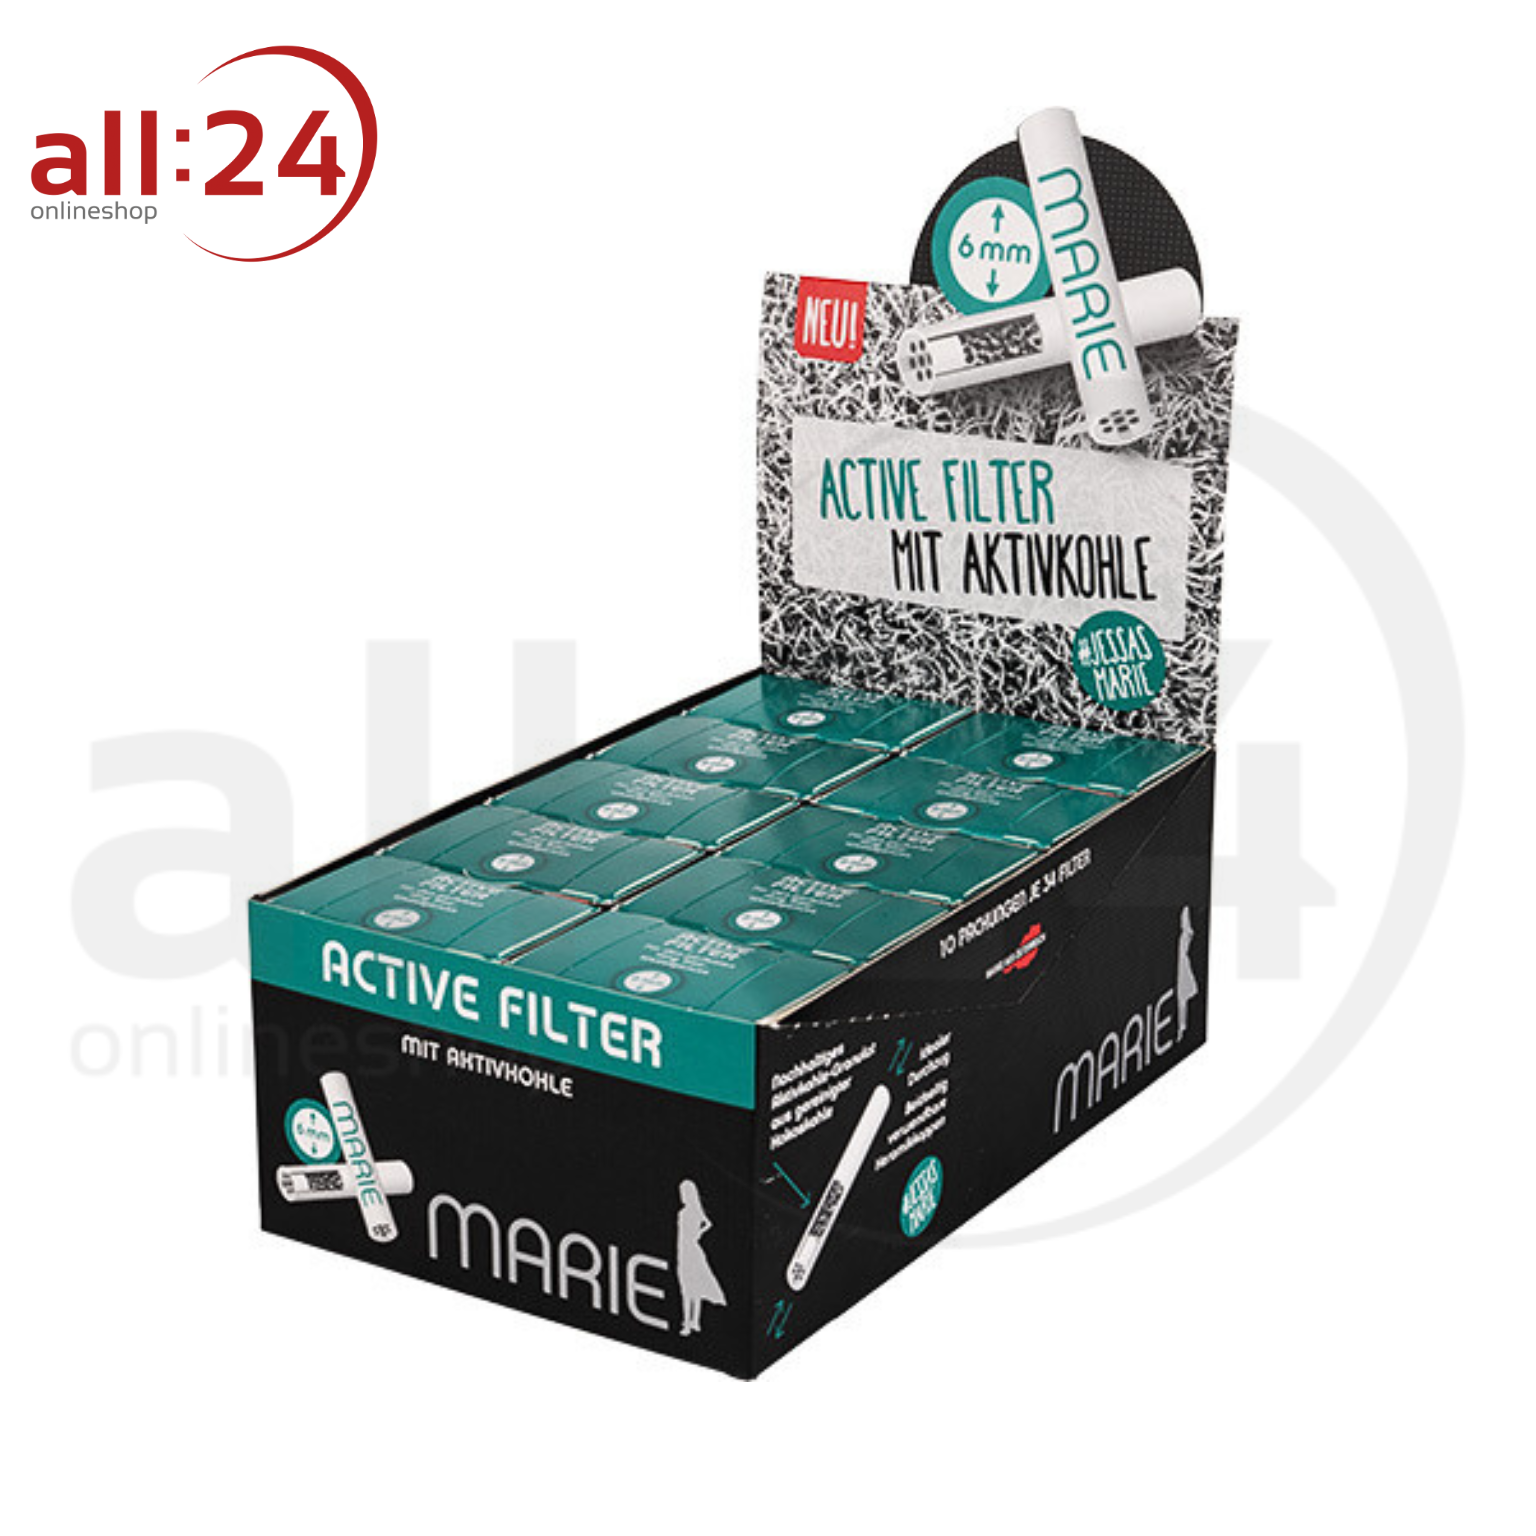 MARIE Active Filter 6mm - Box mit 34 Aktivkohlefiltern 